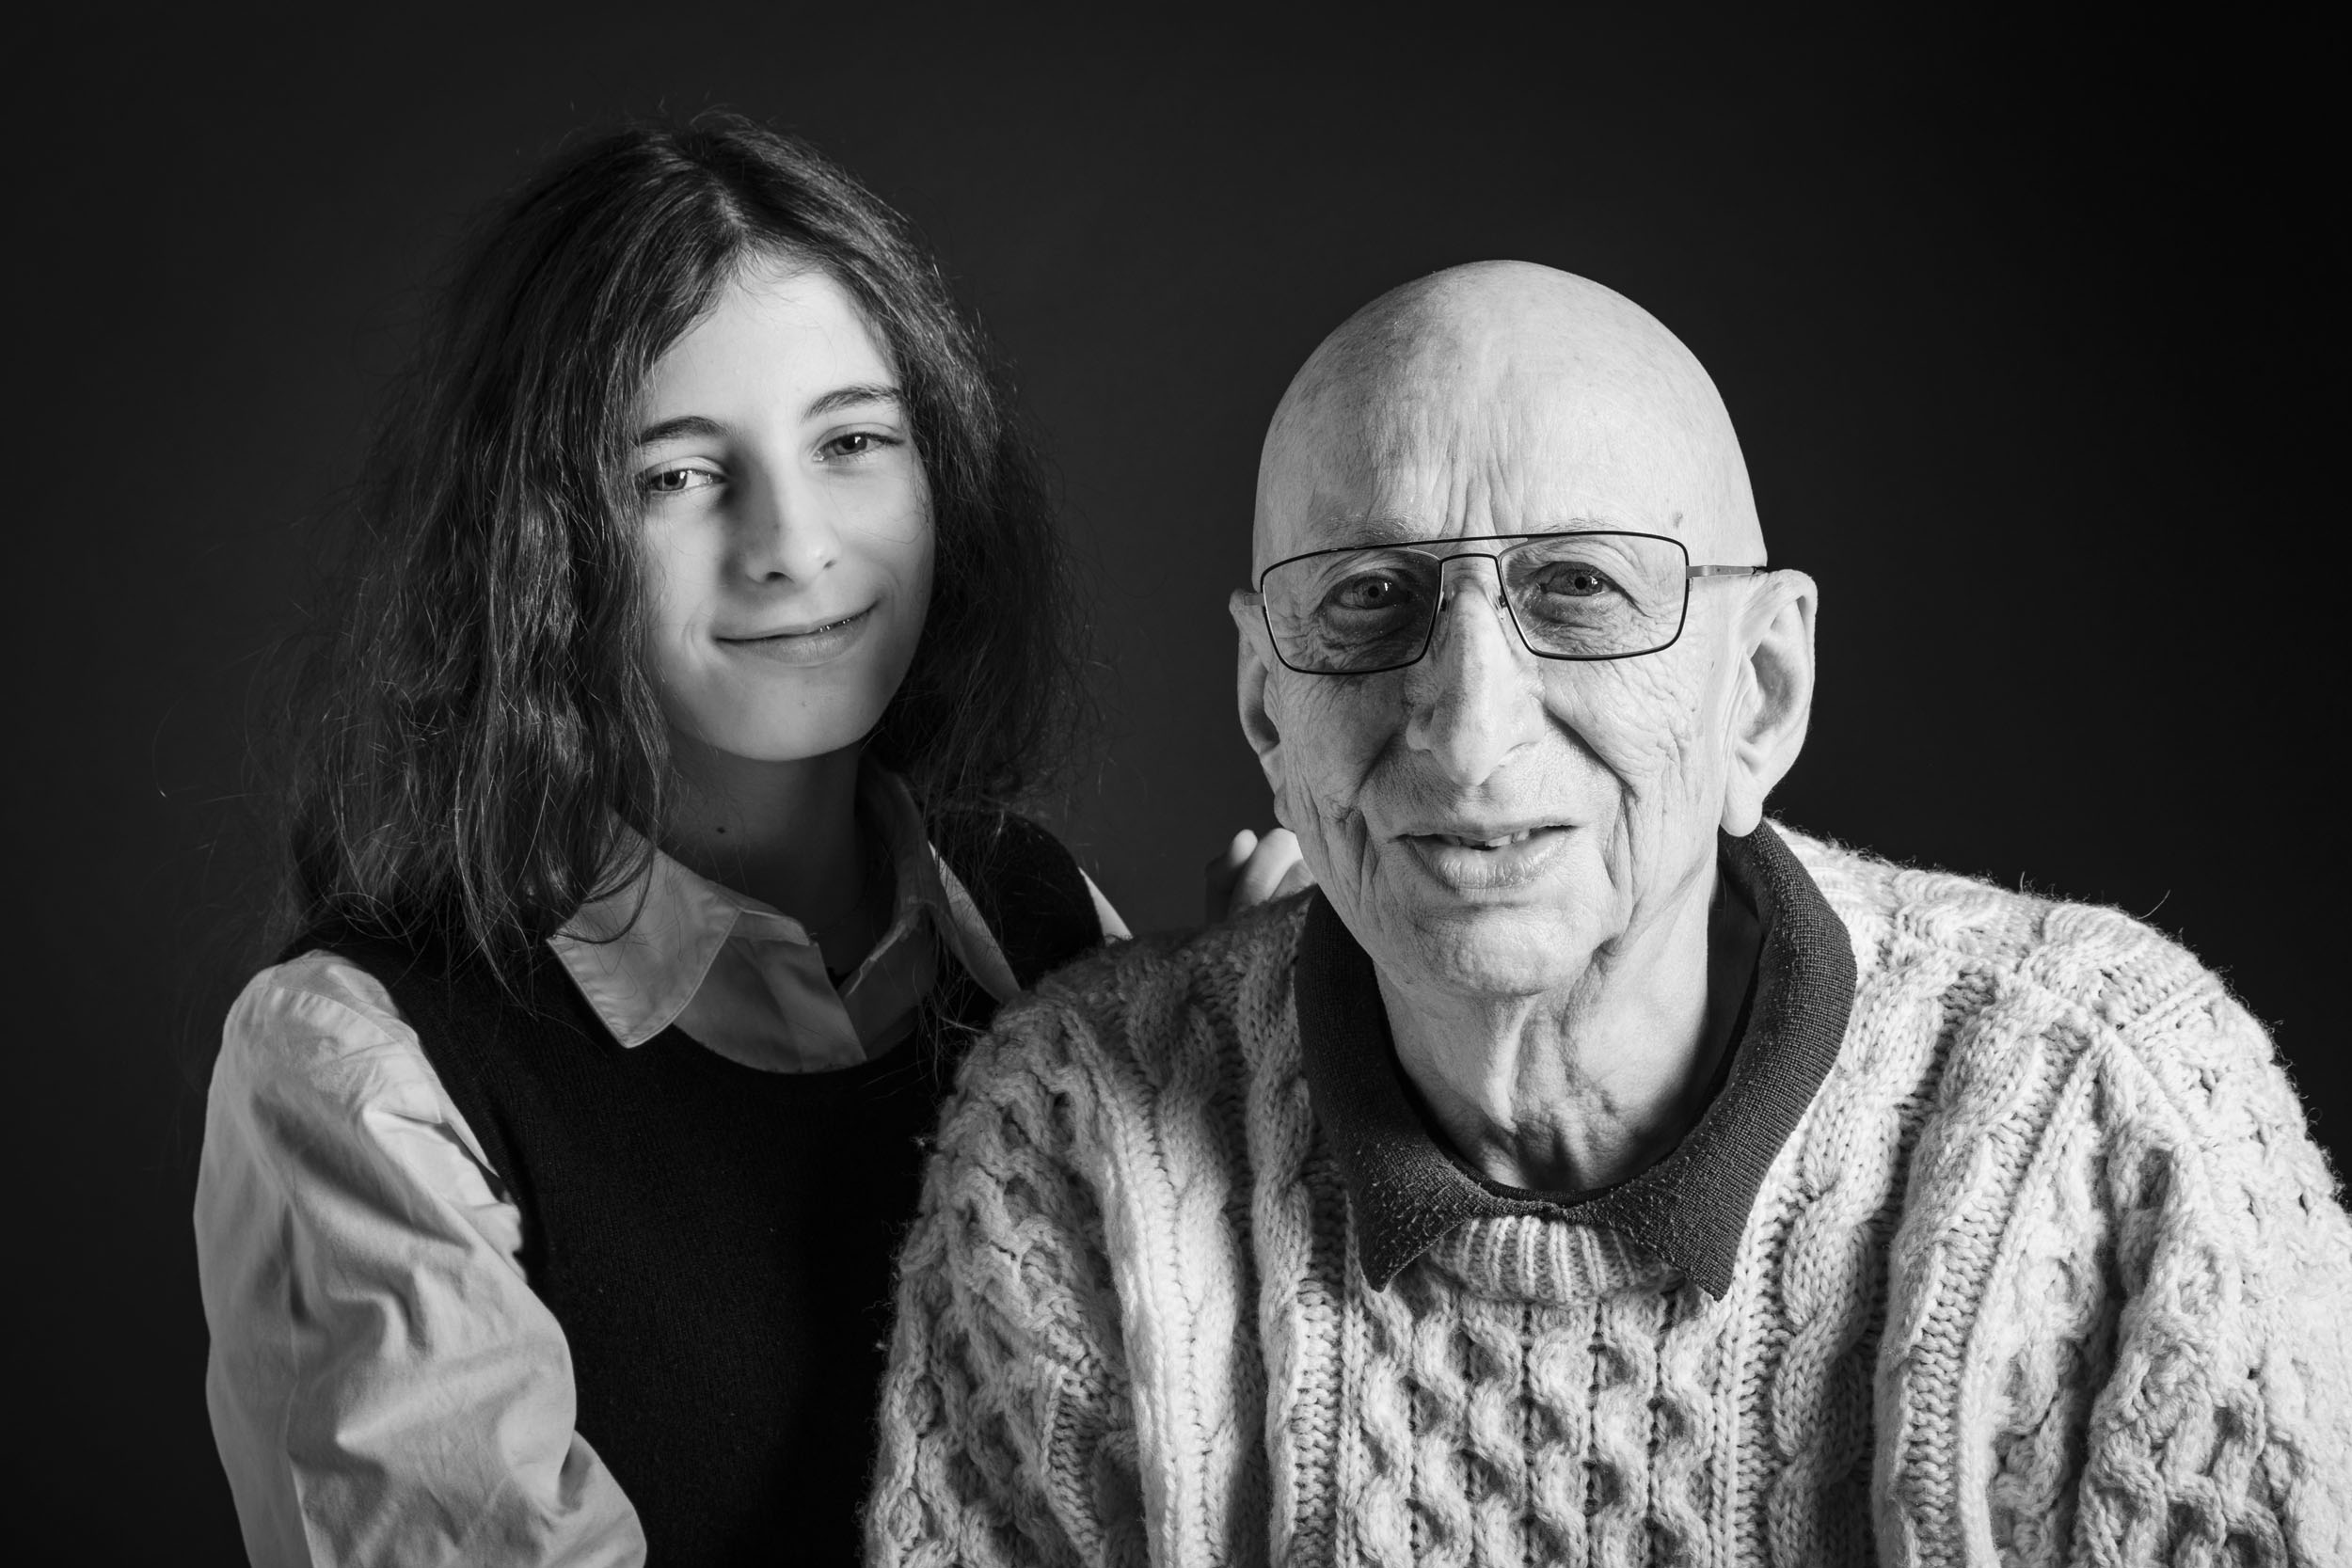 Portrait artistique en noir et blanc d'un grand père avec sa petite fille. Photo de portrait  réalisée en studio et cadrée en plan rapproché.